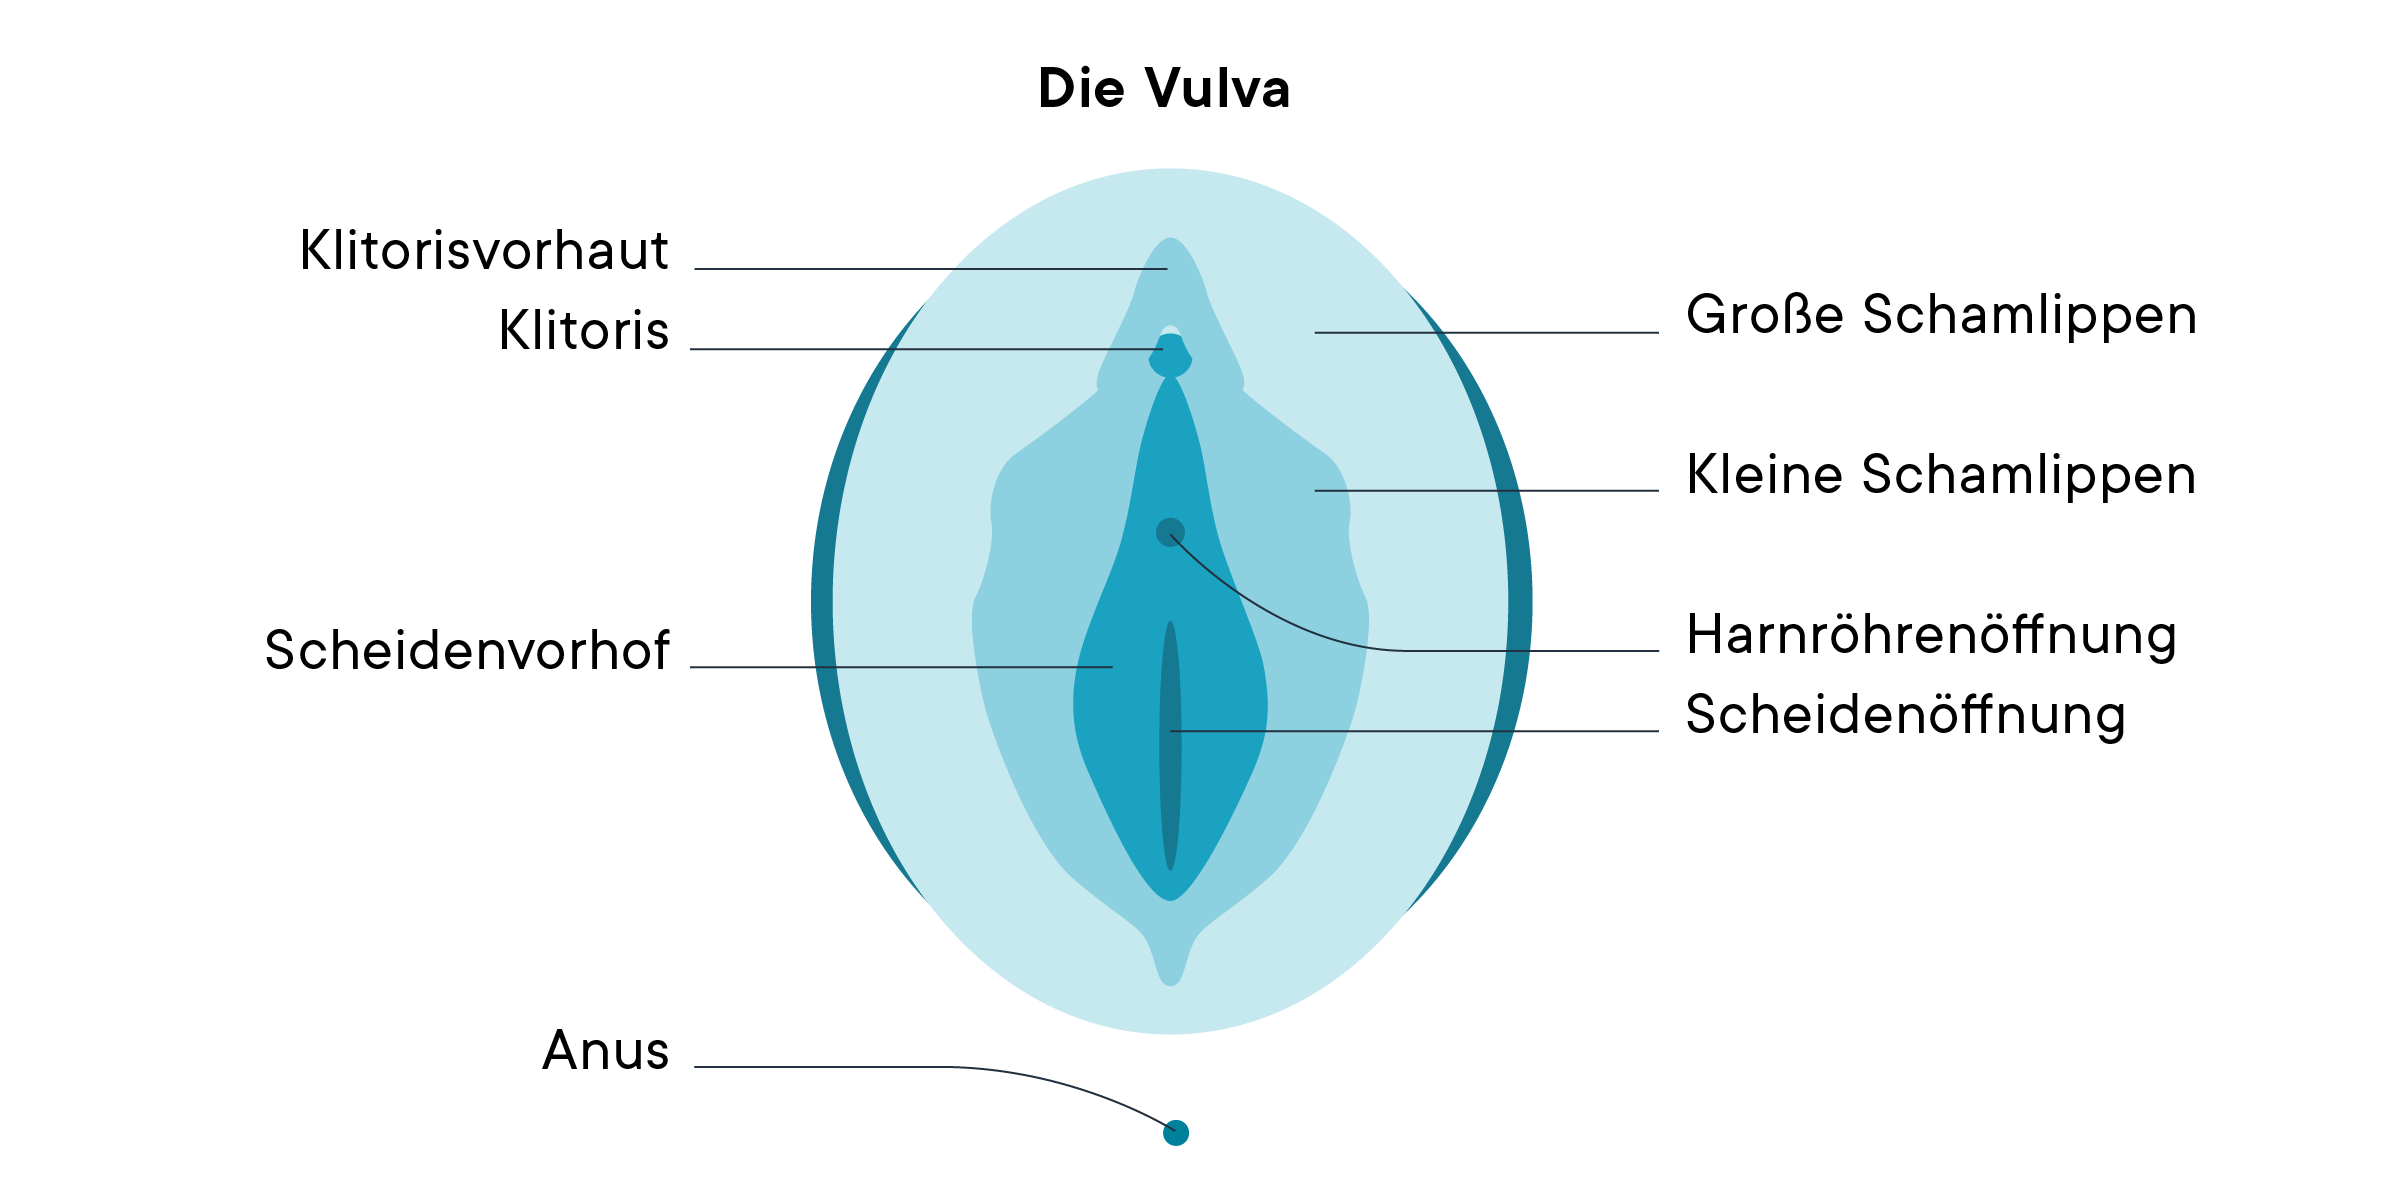 Ein Diagramm der Vulva